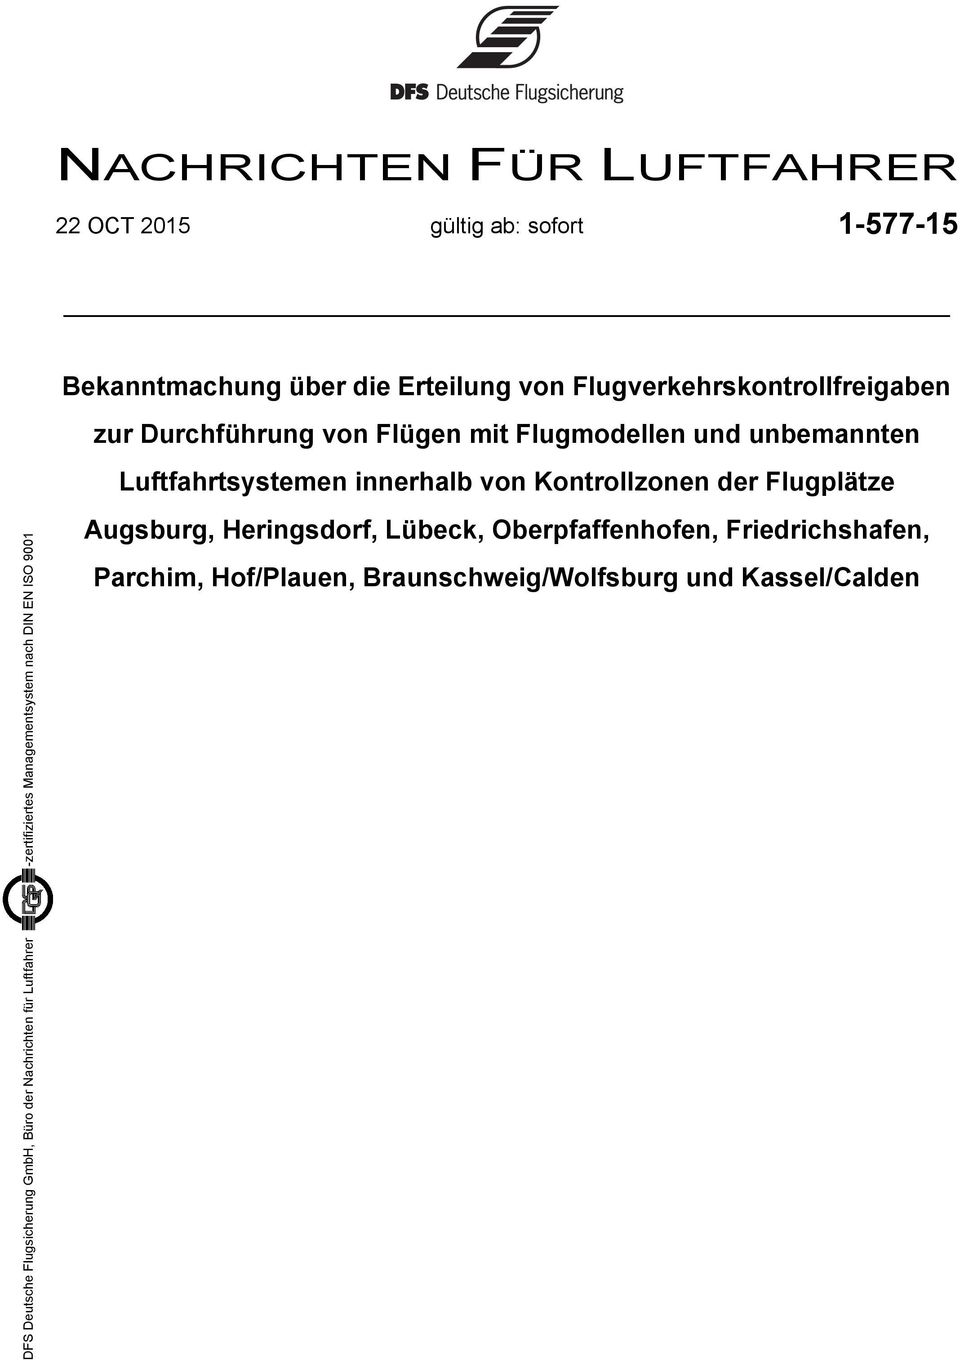 Kontrollzonen der Flugplätze DFS Deutsche Flugsicherung GmbH, Büro der Nachrichten für Luftfahrer -zertifiziertes